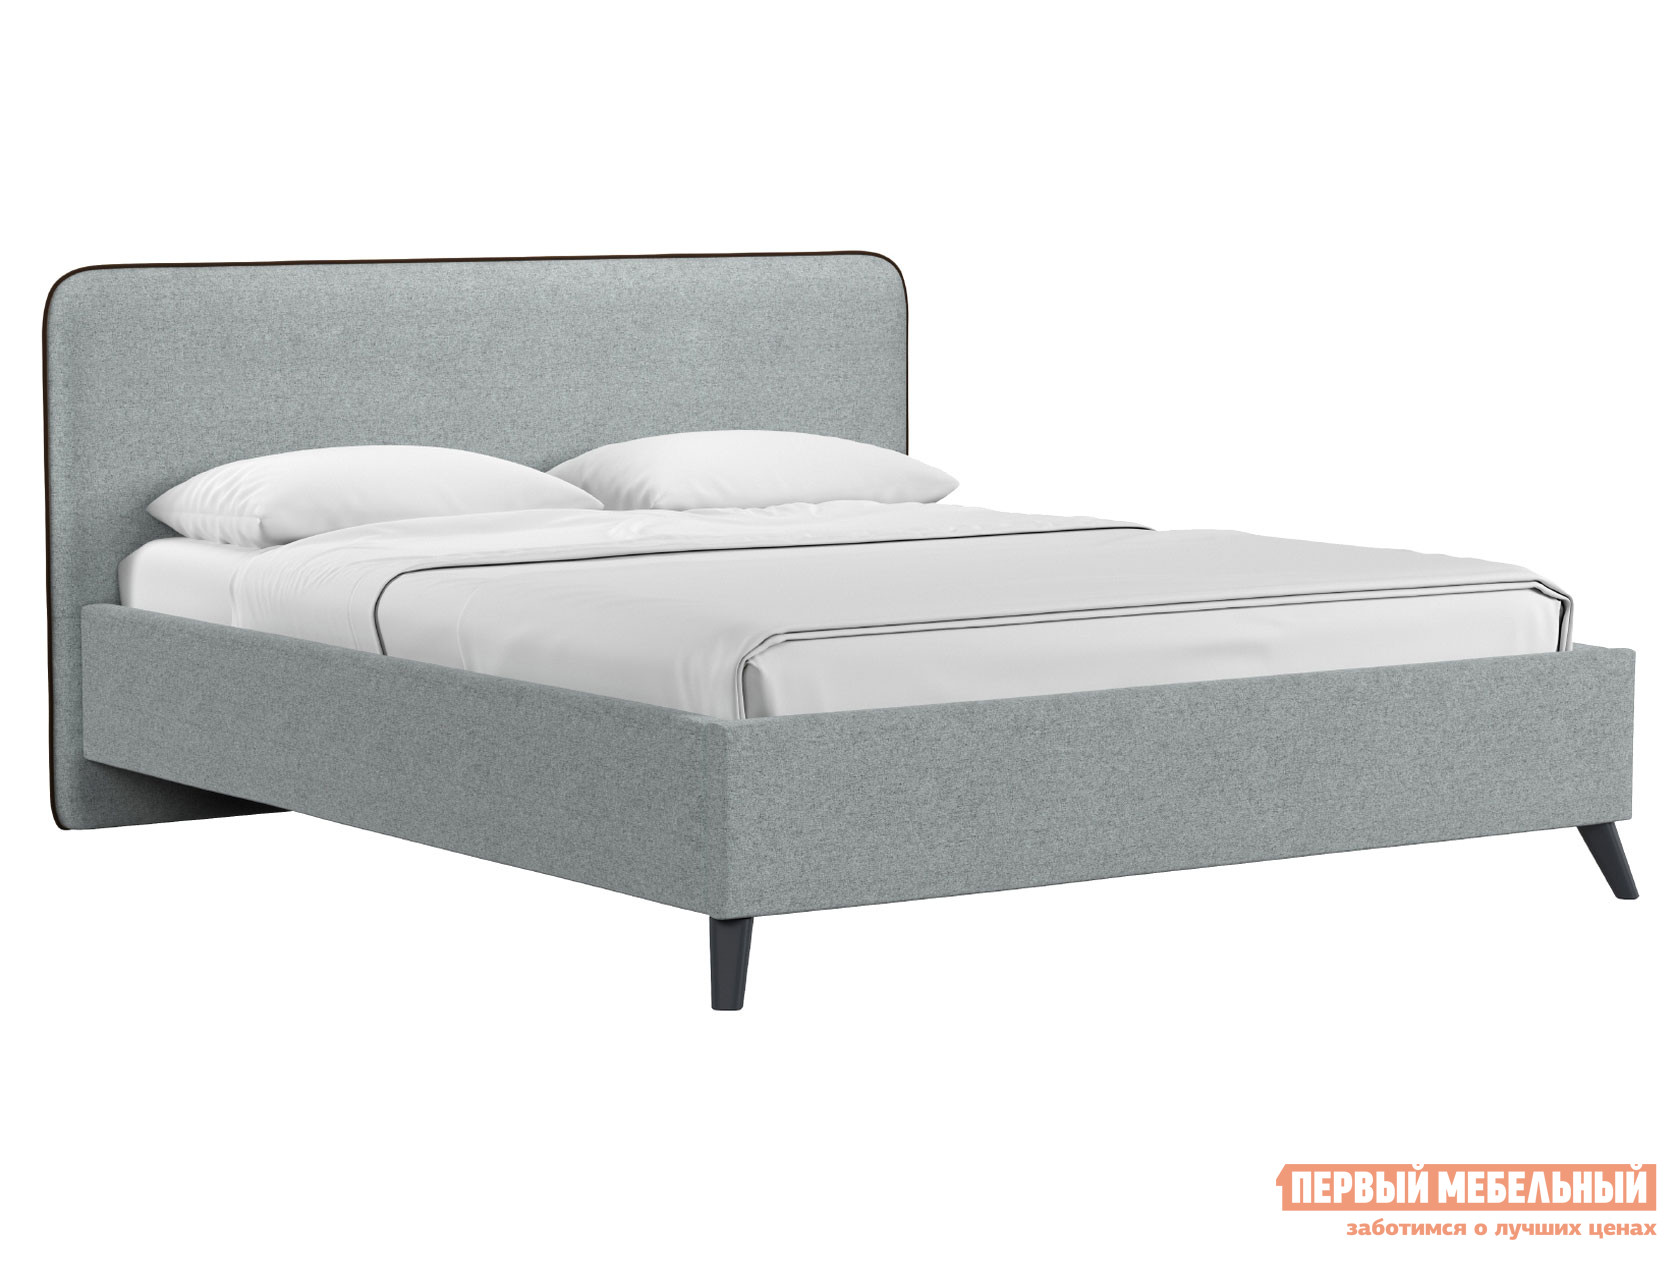 Двуспальная кровать  Миа ПМ Серый, жаккард, 140х200 см НижегородмебельИК 129511